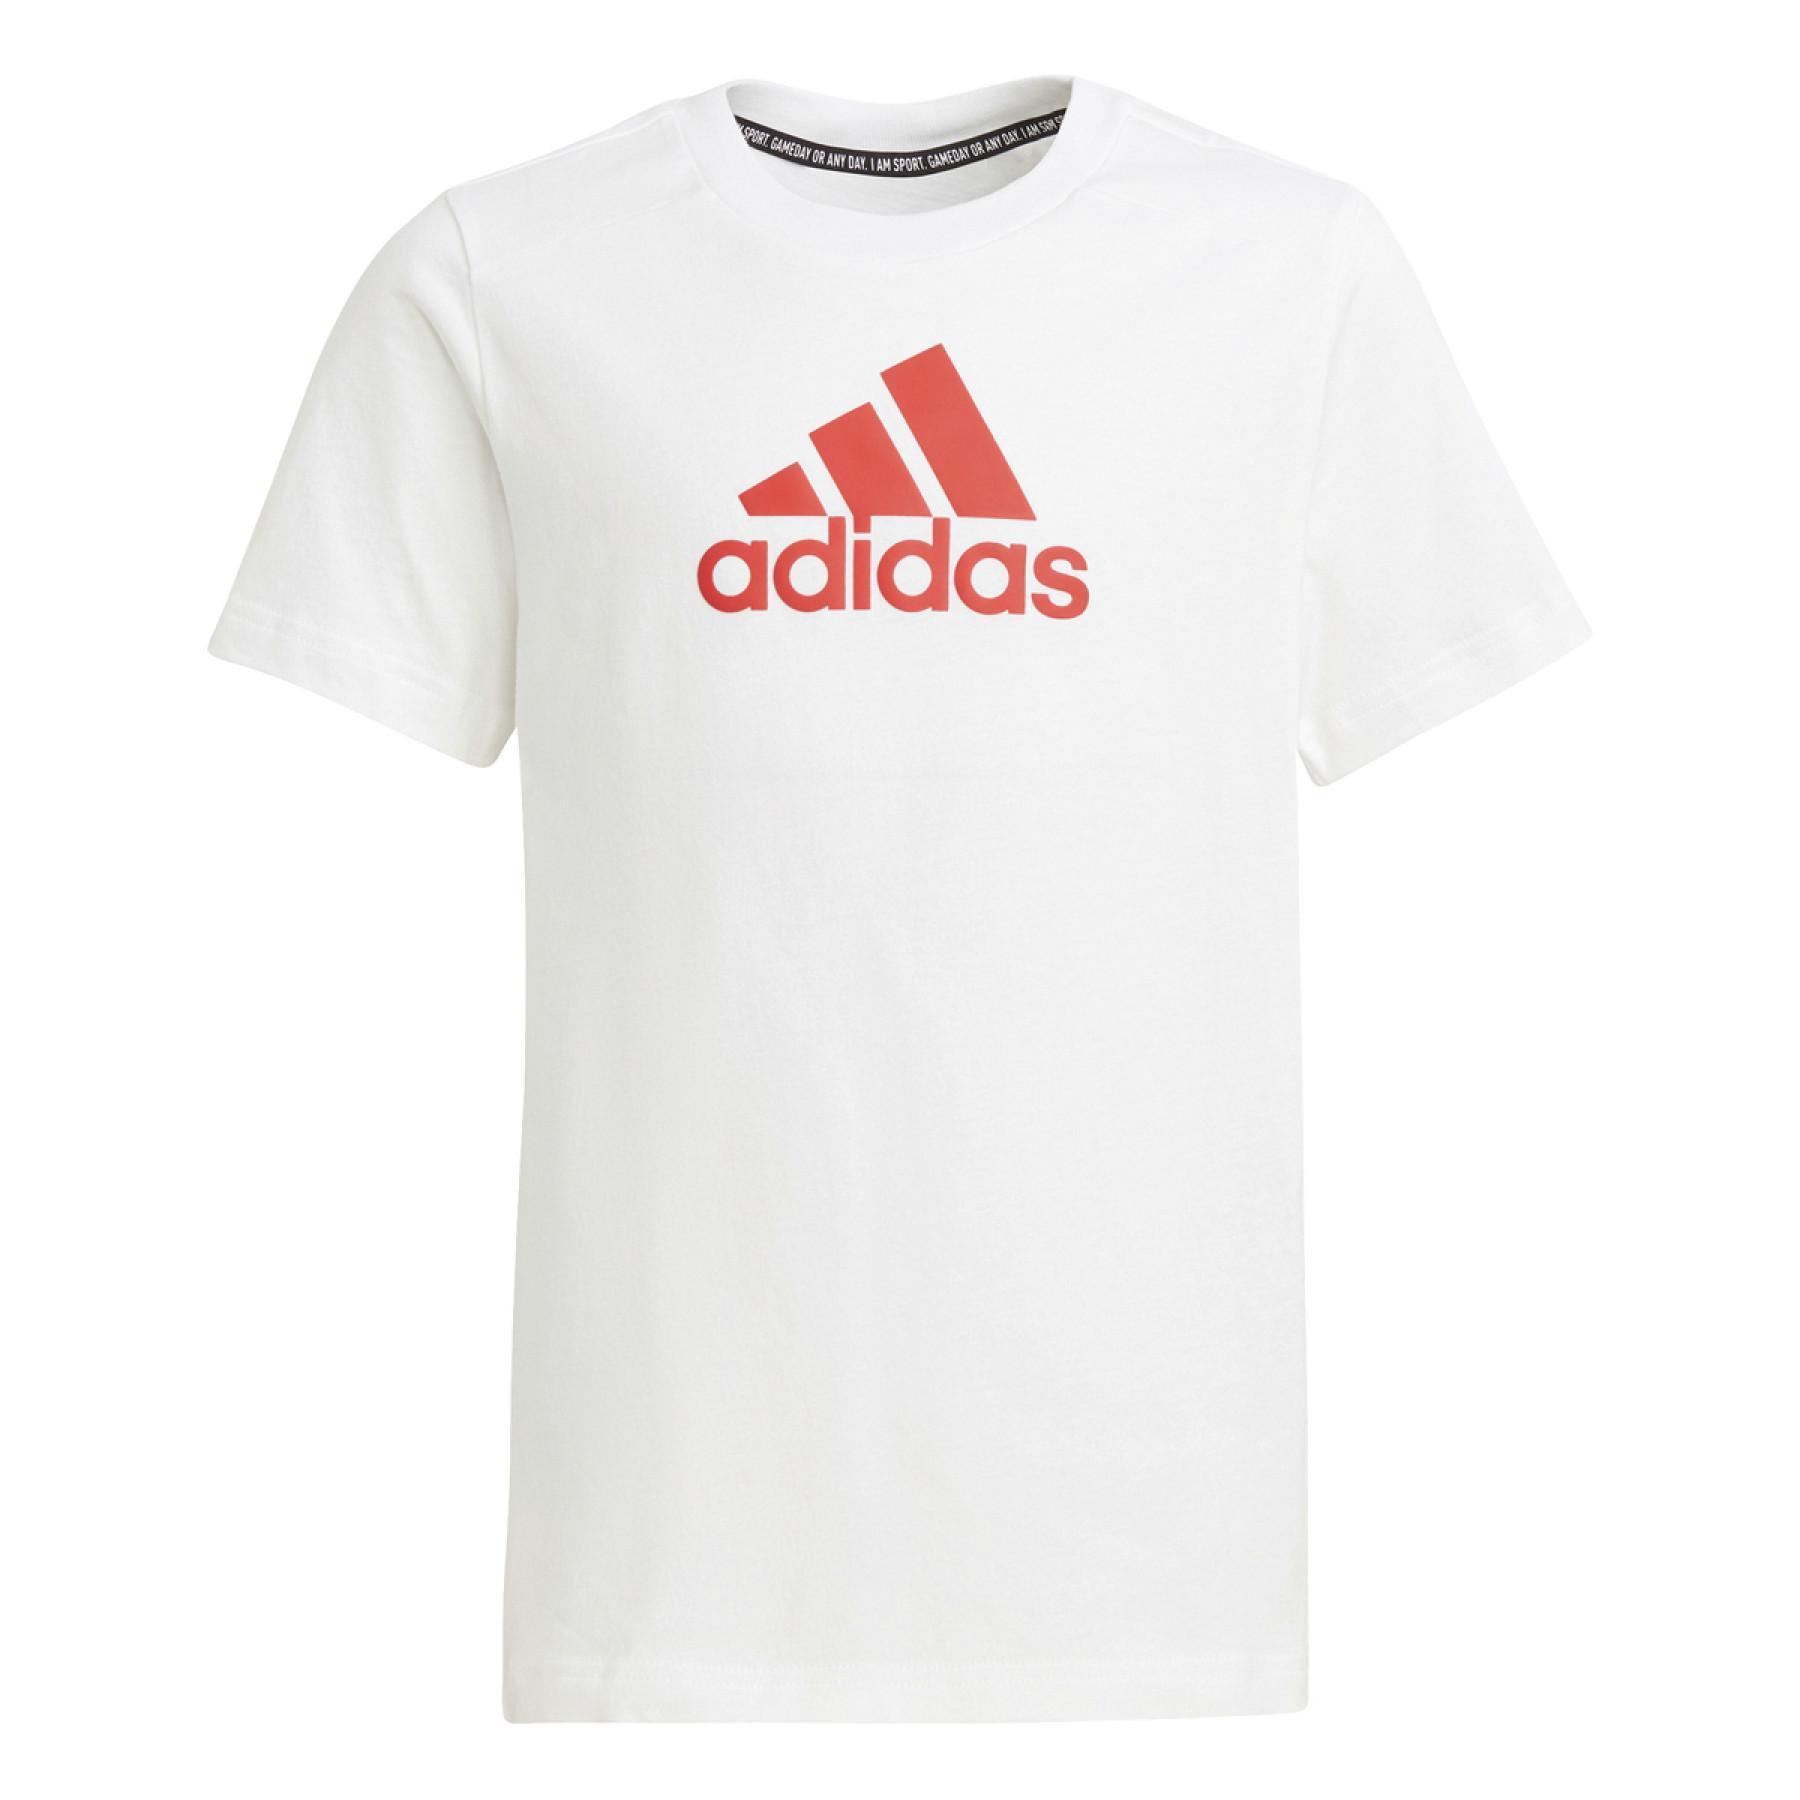 Kinder-T-shirt adidas Logo